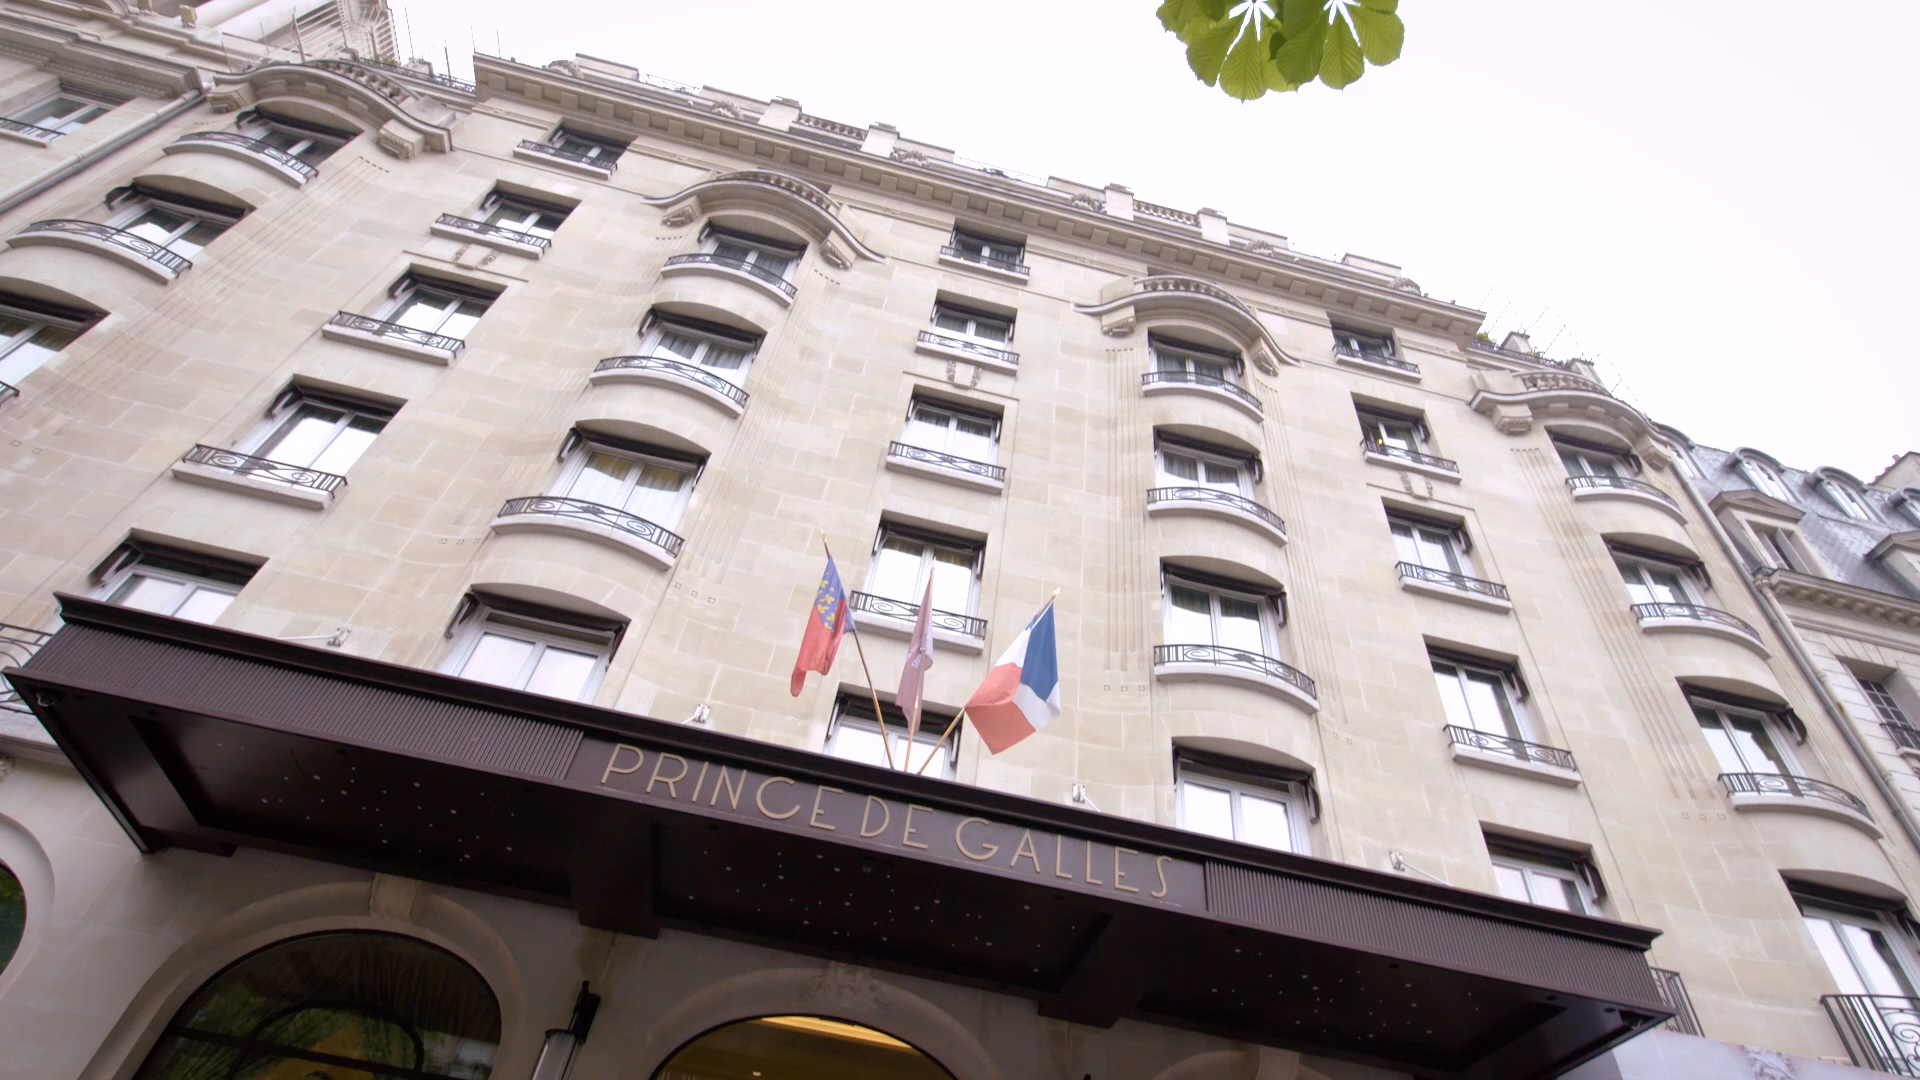 Entrance of the hotel Prince de Galles in Paris